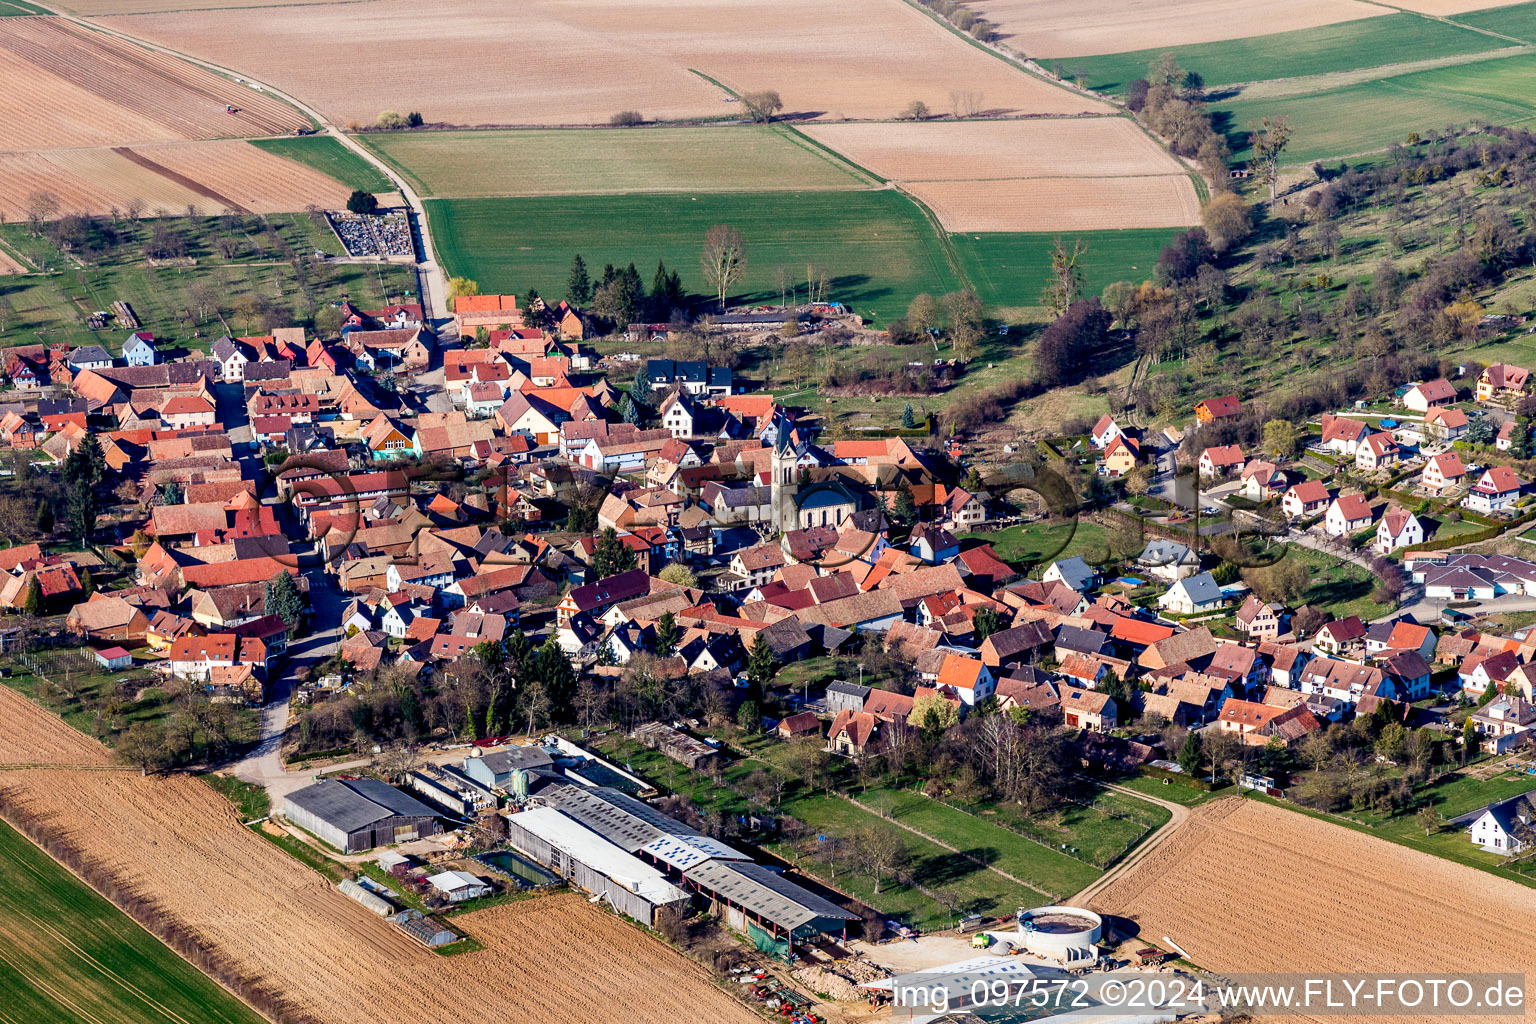 Vue aérienne de Champs agricoles et surfaces utilisables à Melsheim dans le département Bas Rhin, France